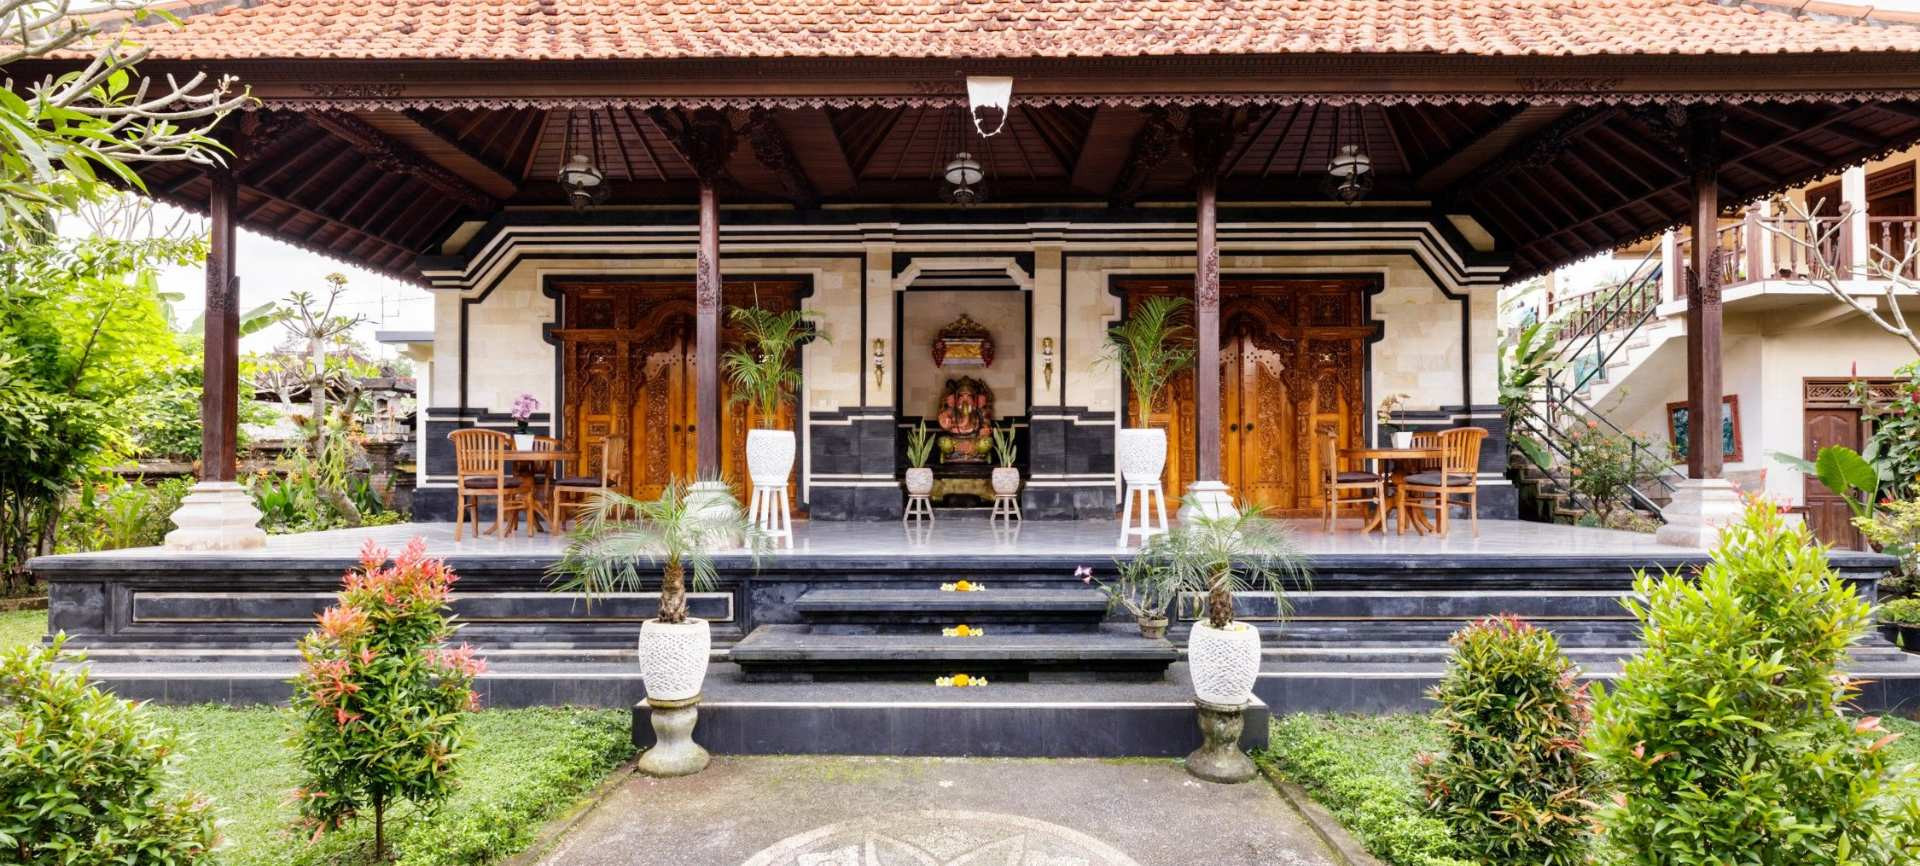 Asta Kosala Kosali dalam Rumah Adat Bali, Ini Dia 9 Fengshui Ala Umat Hindu Bali 